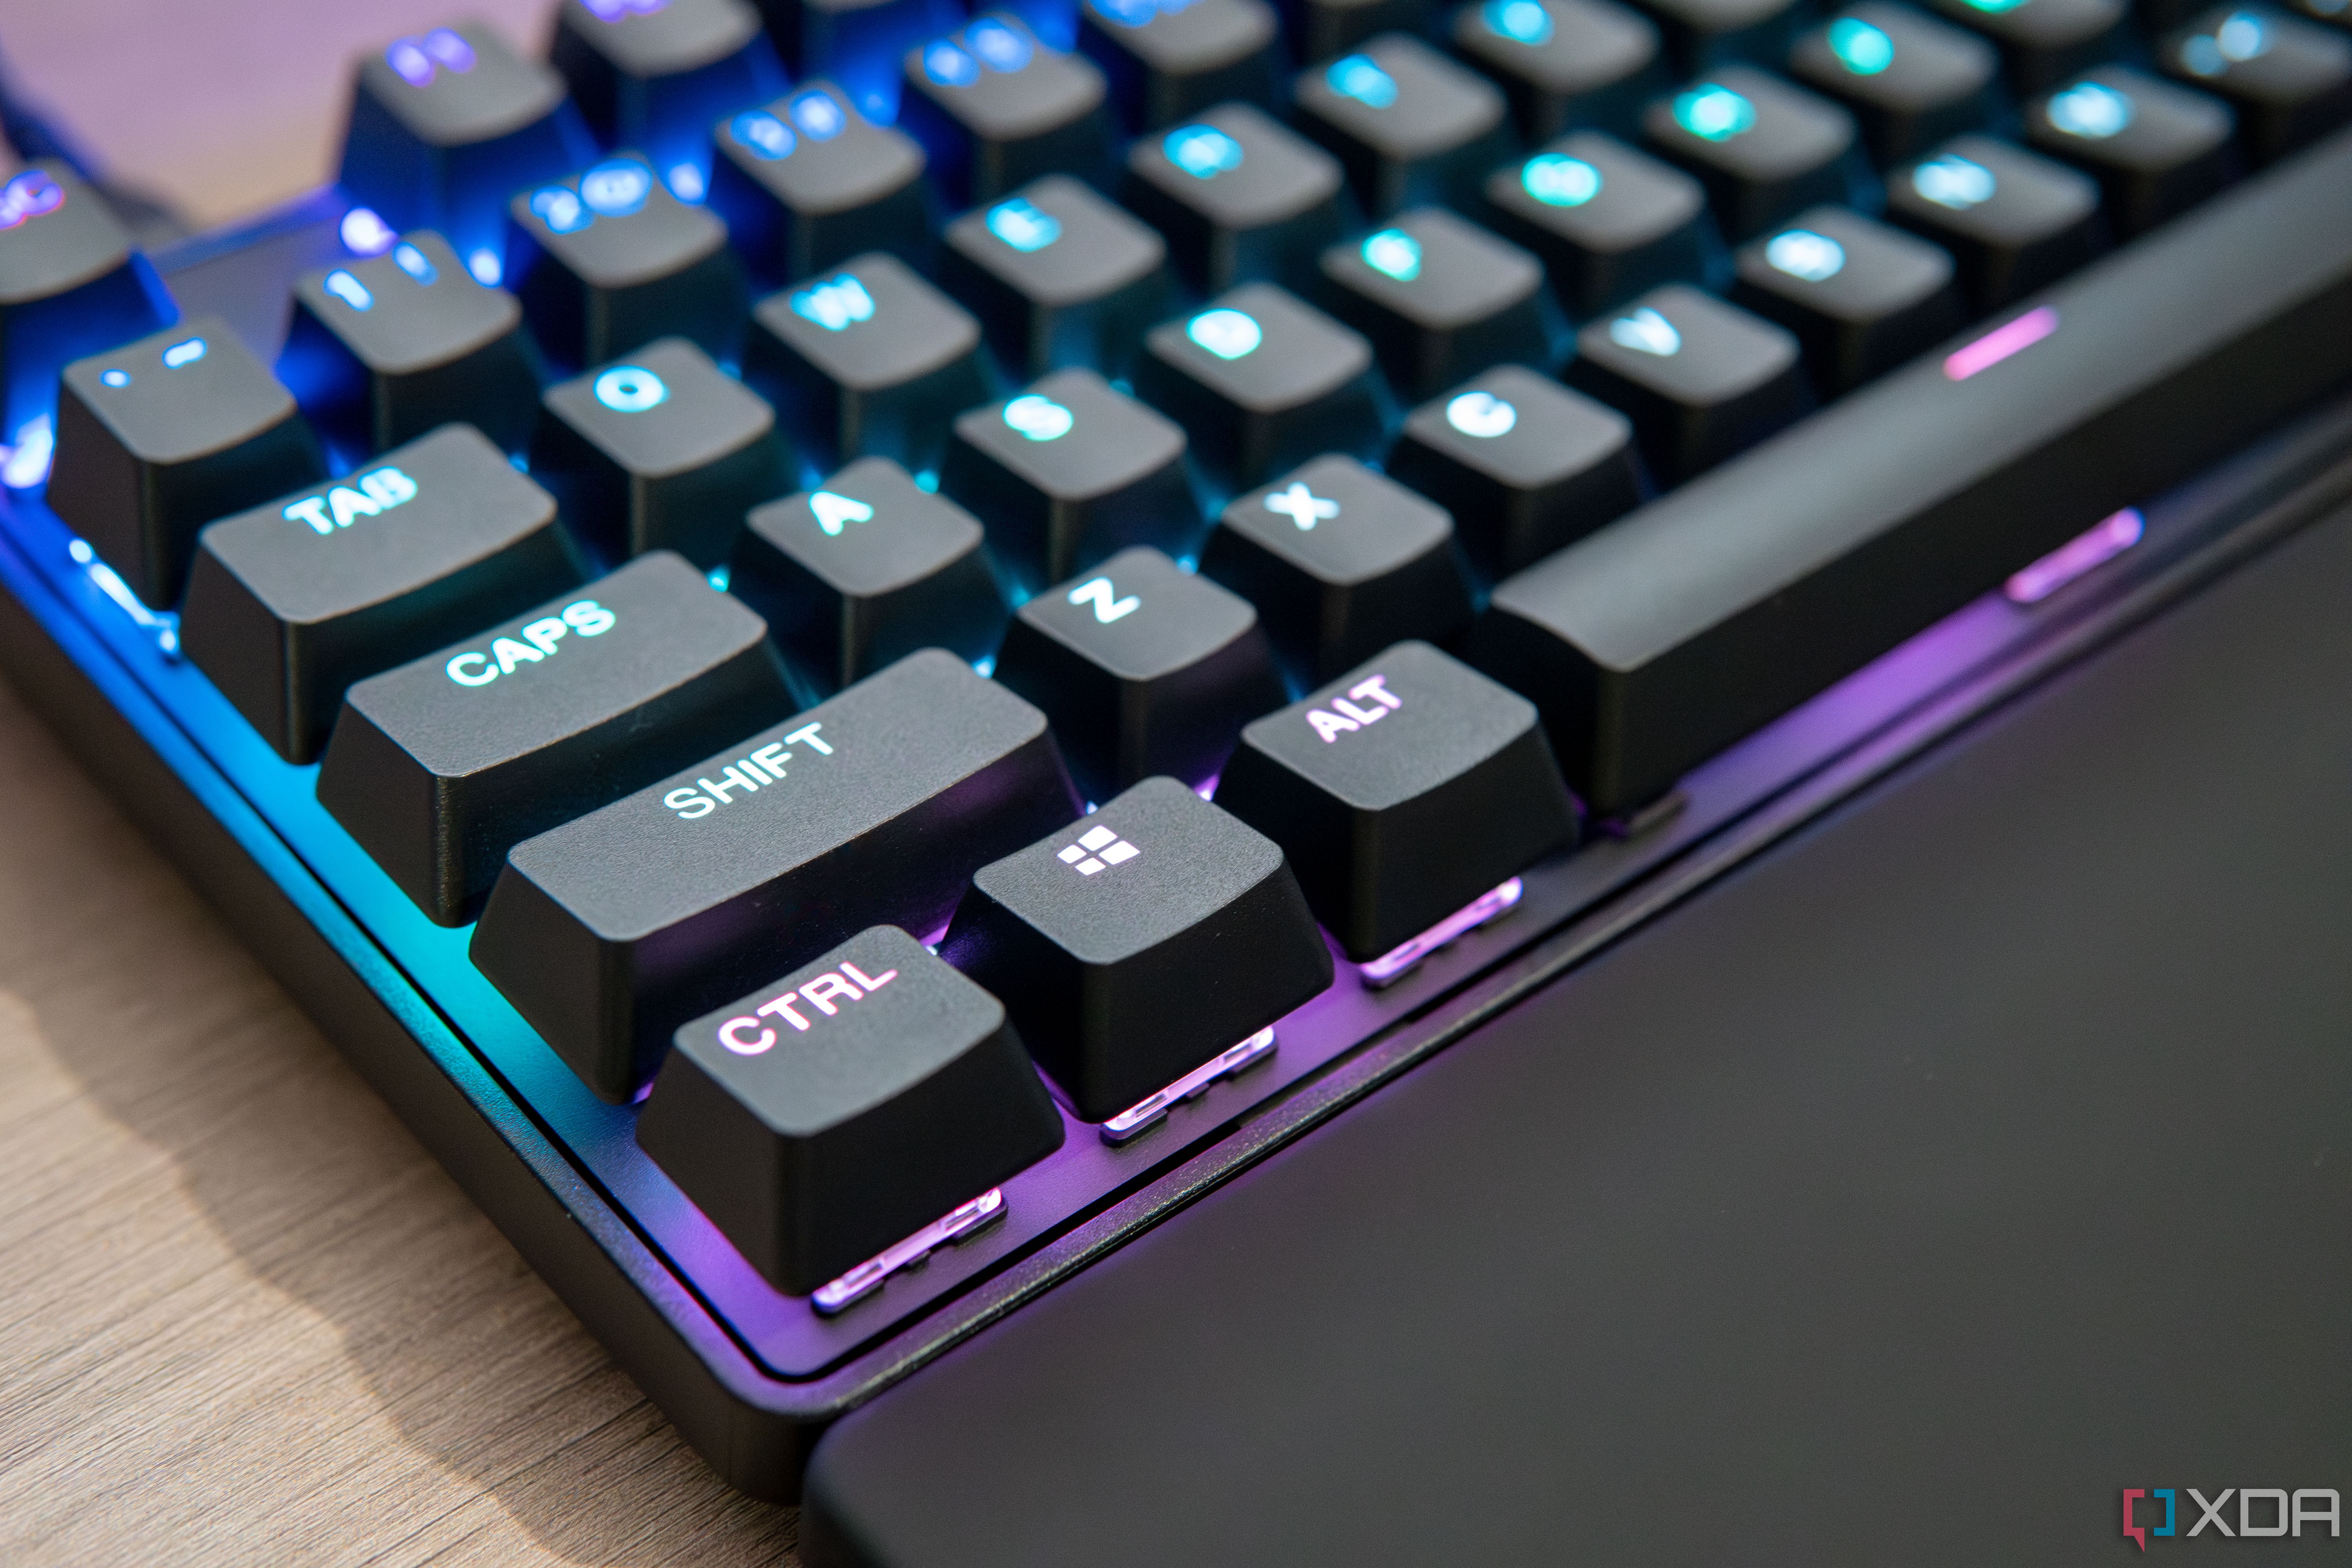 SteelSeries Apex Pro TKL RGB Wired Gaming Keyboard